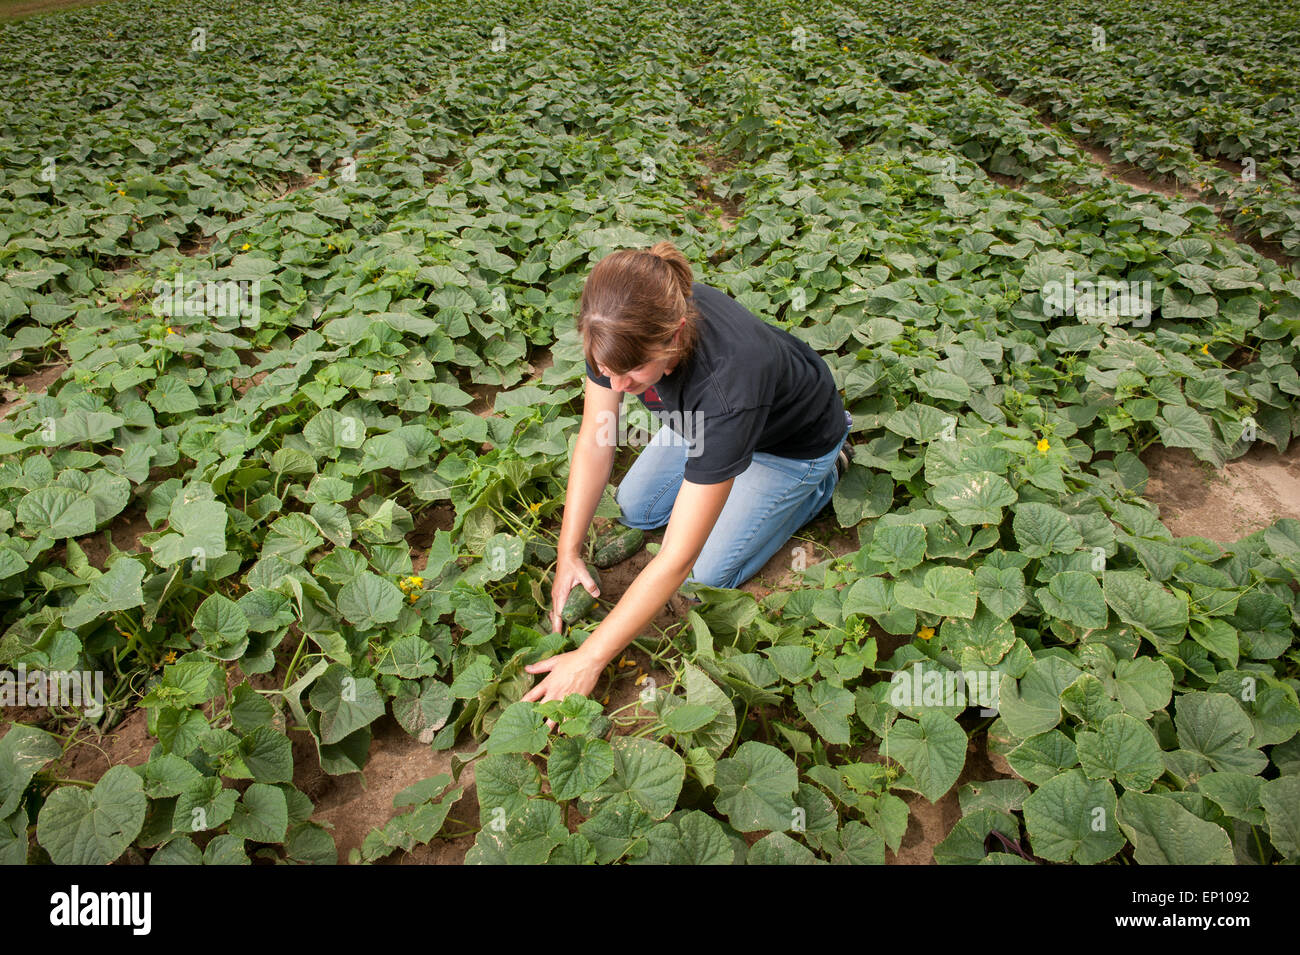 Joven agricultor comprobando los pepinos en una granja cerca de pepino Federalsburg, Maryland, EE.UU. Foto de stock